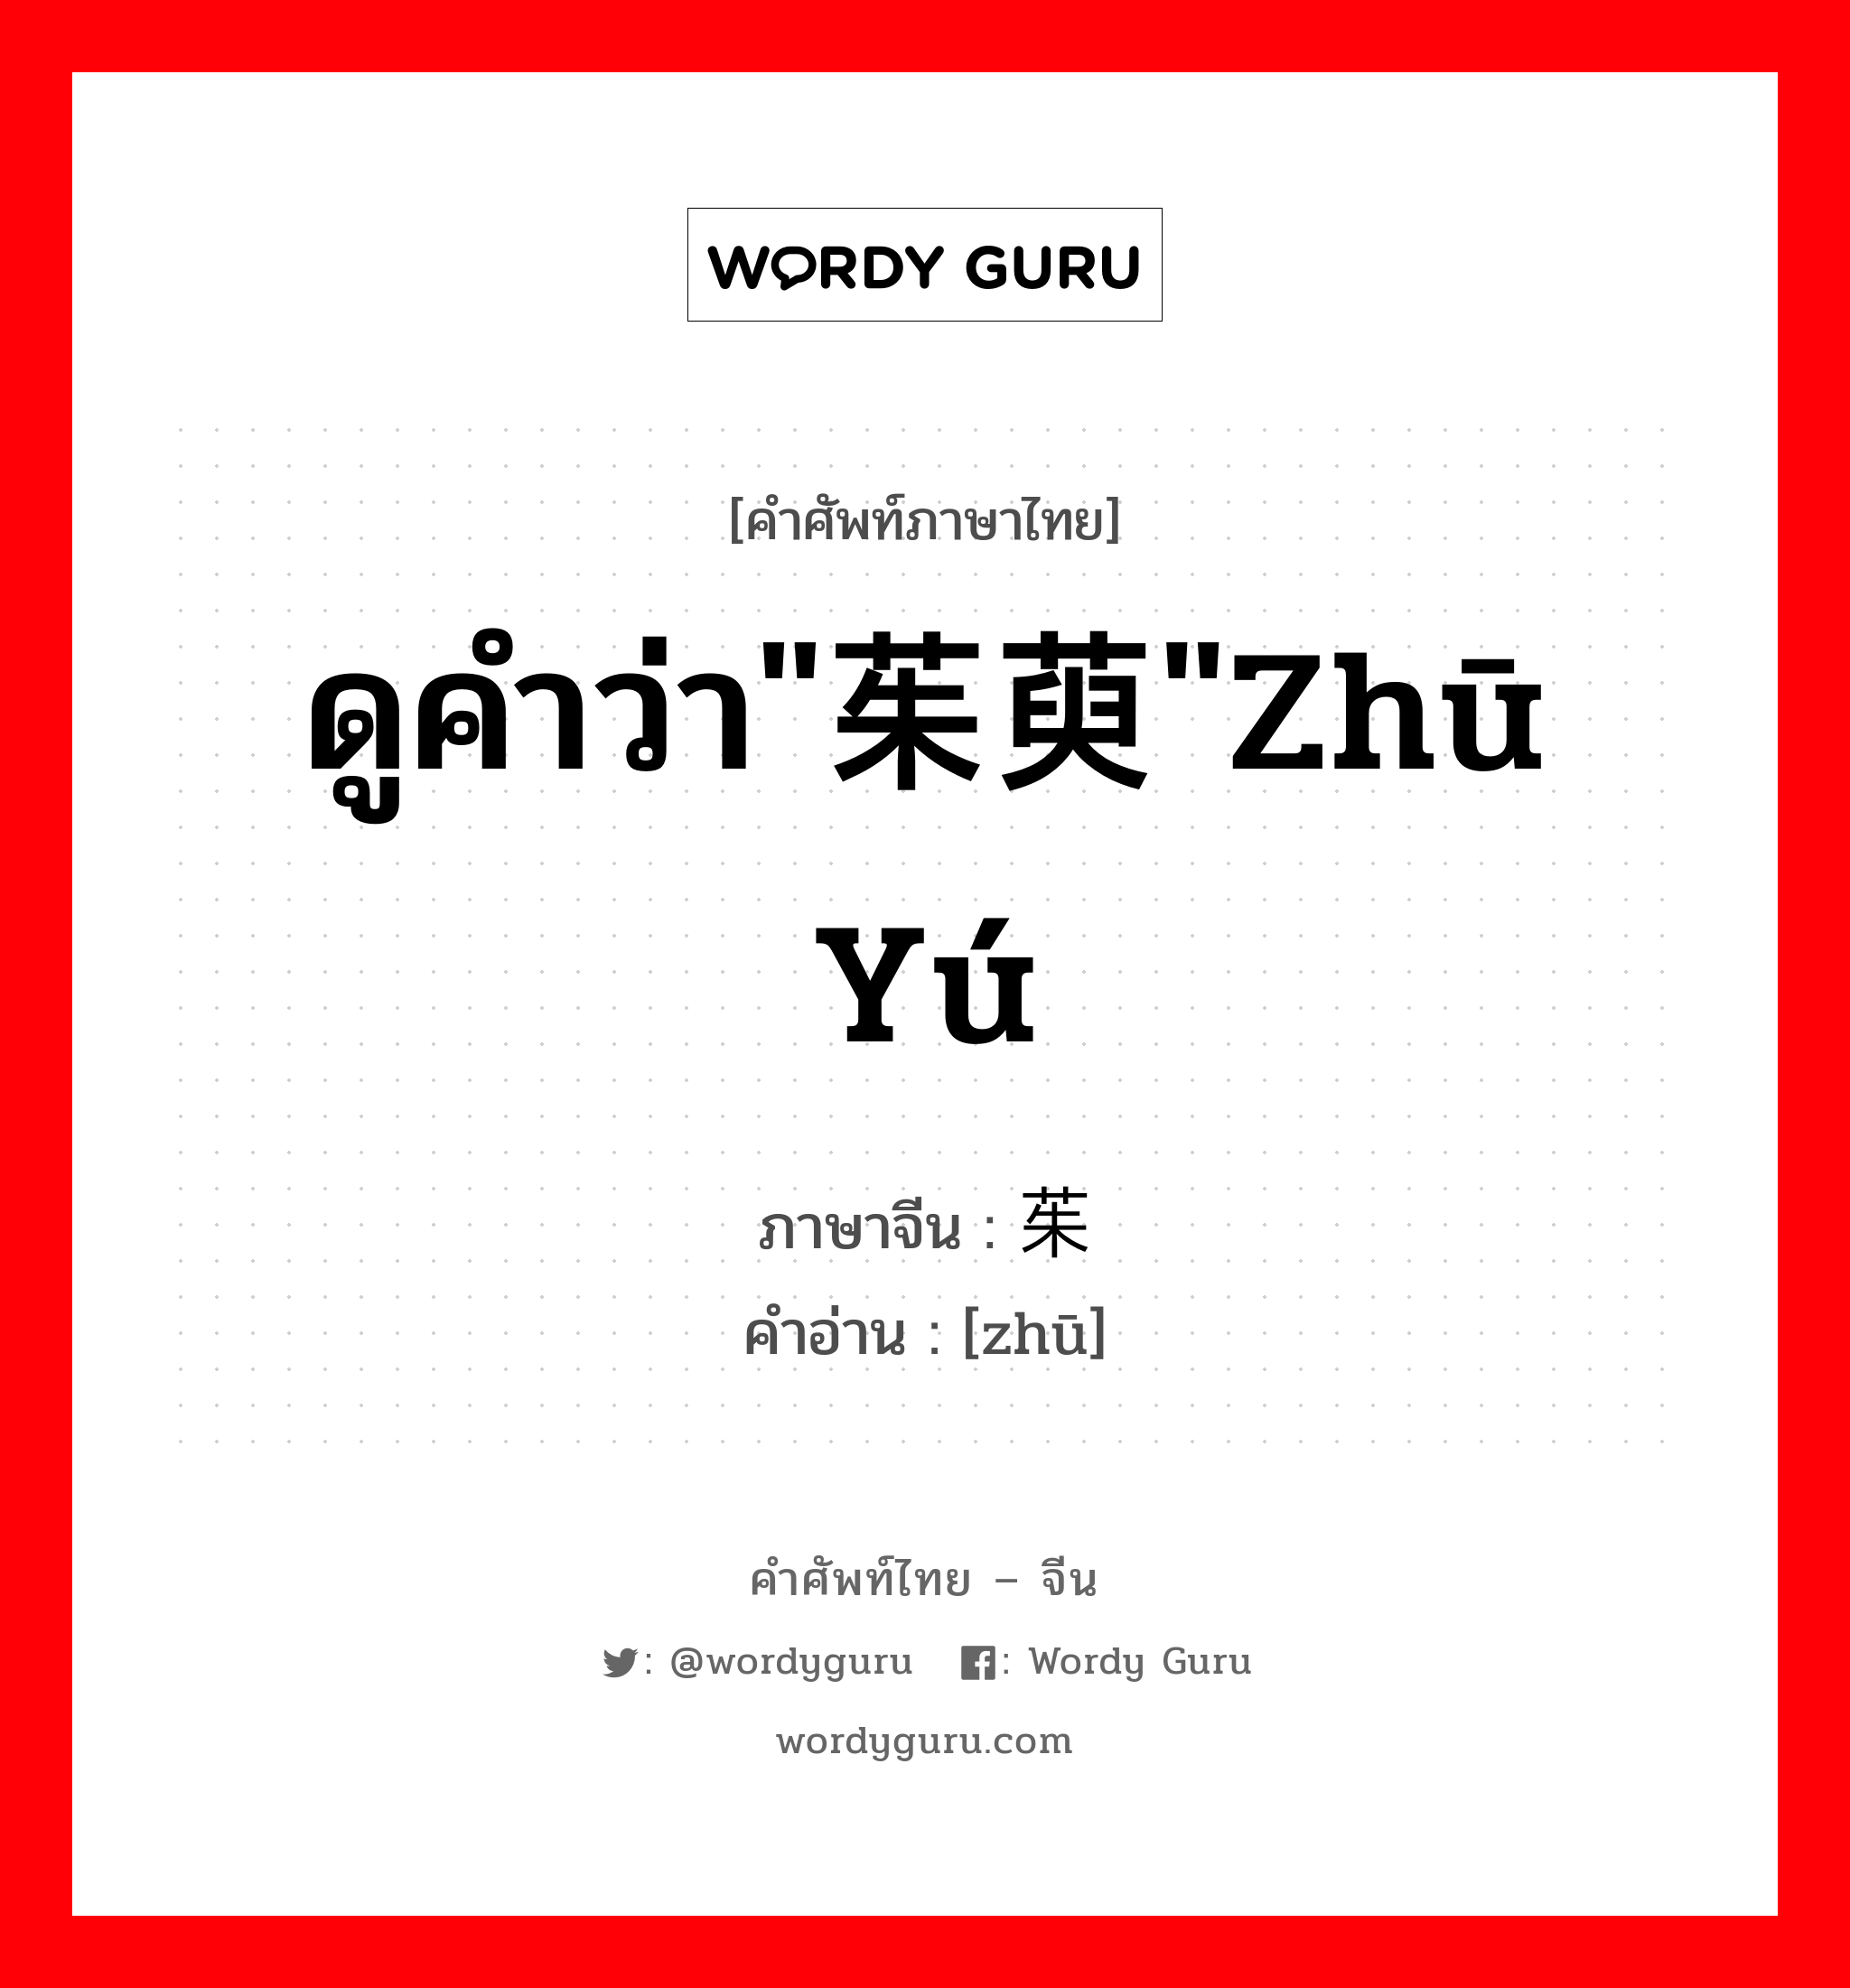 ดูคำว่า"茱萸"zhū yú ภาษาจีนคืออะไร, คำศัพท์ภาษาไทย - จีน ดูคำว่า"茱萸"zhū yú ภาษาจีน 茱 คำอ่าน [zhū]